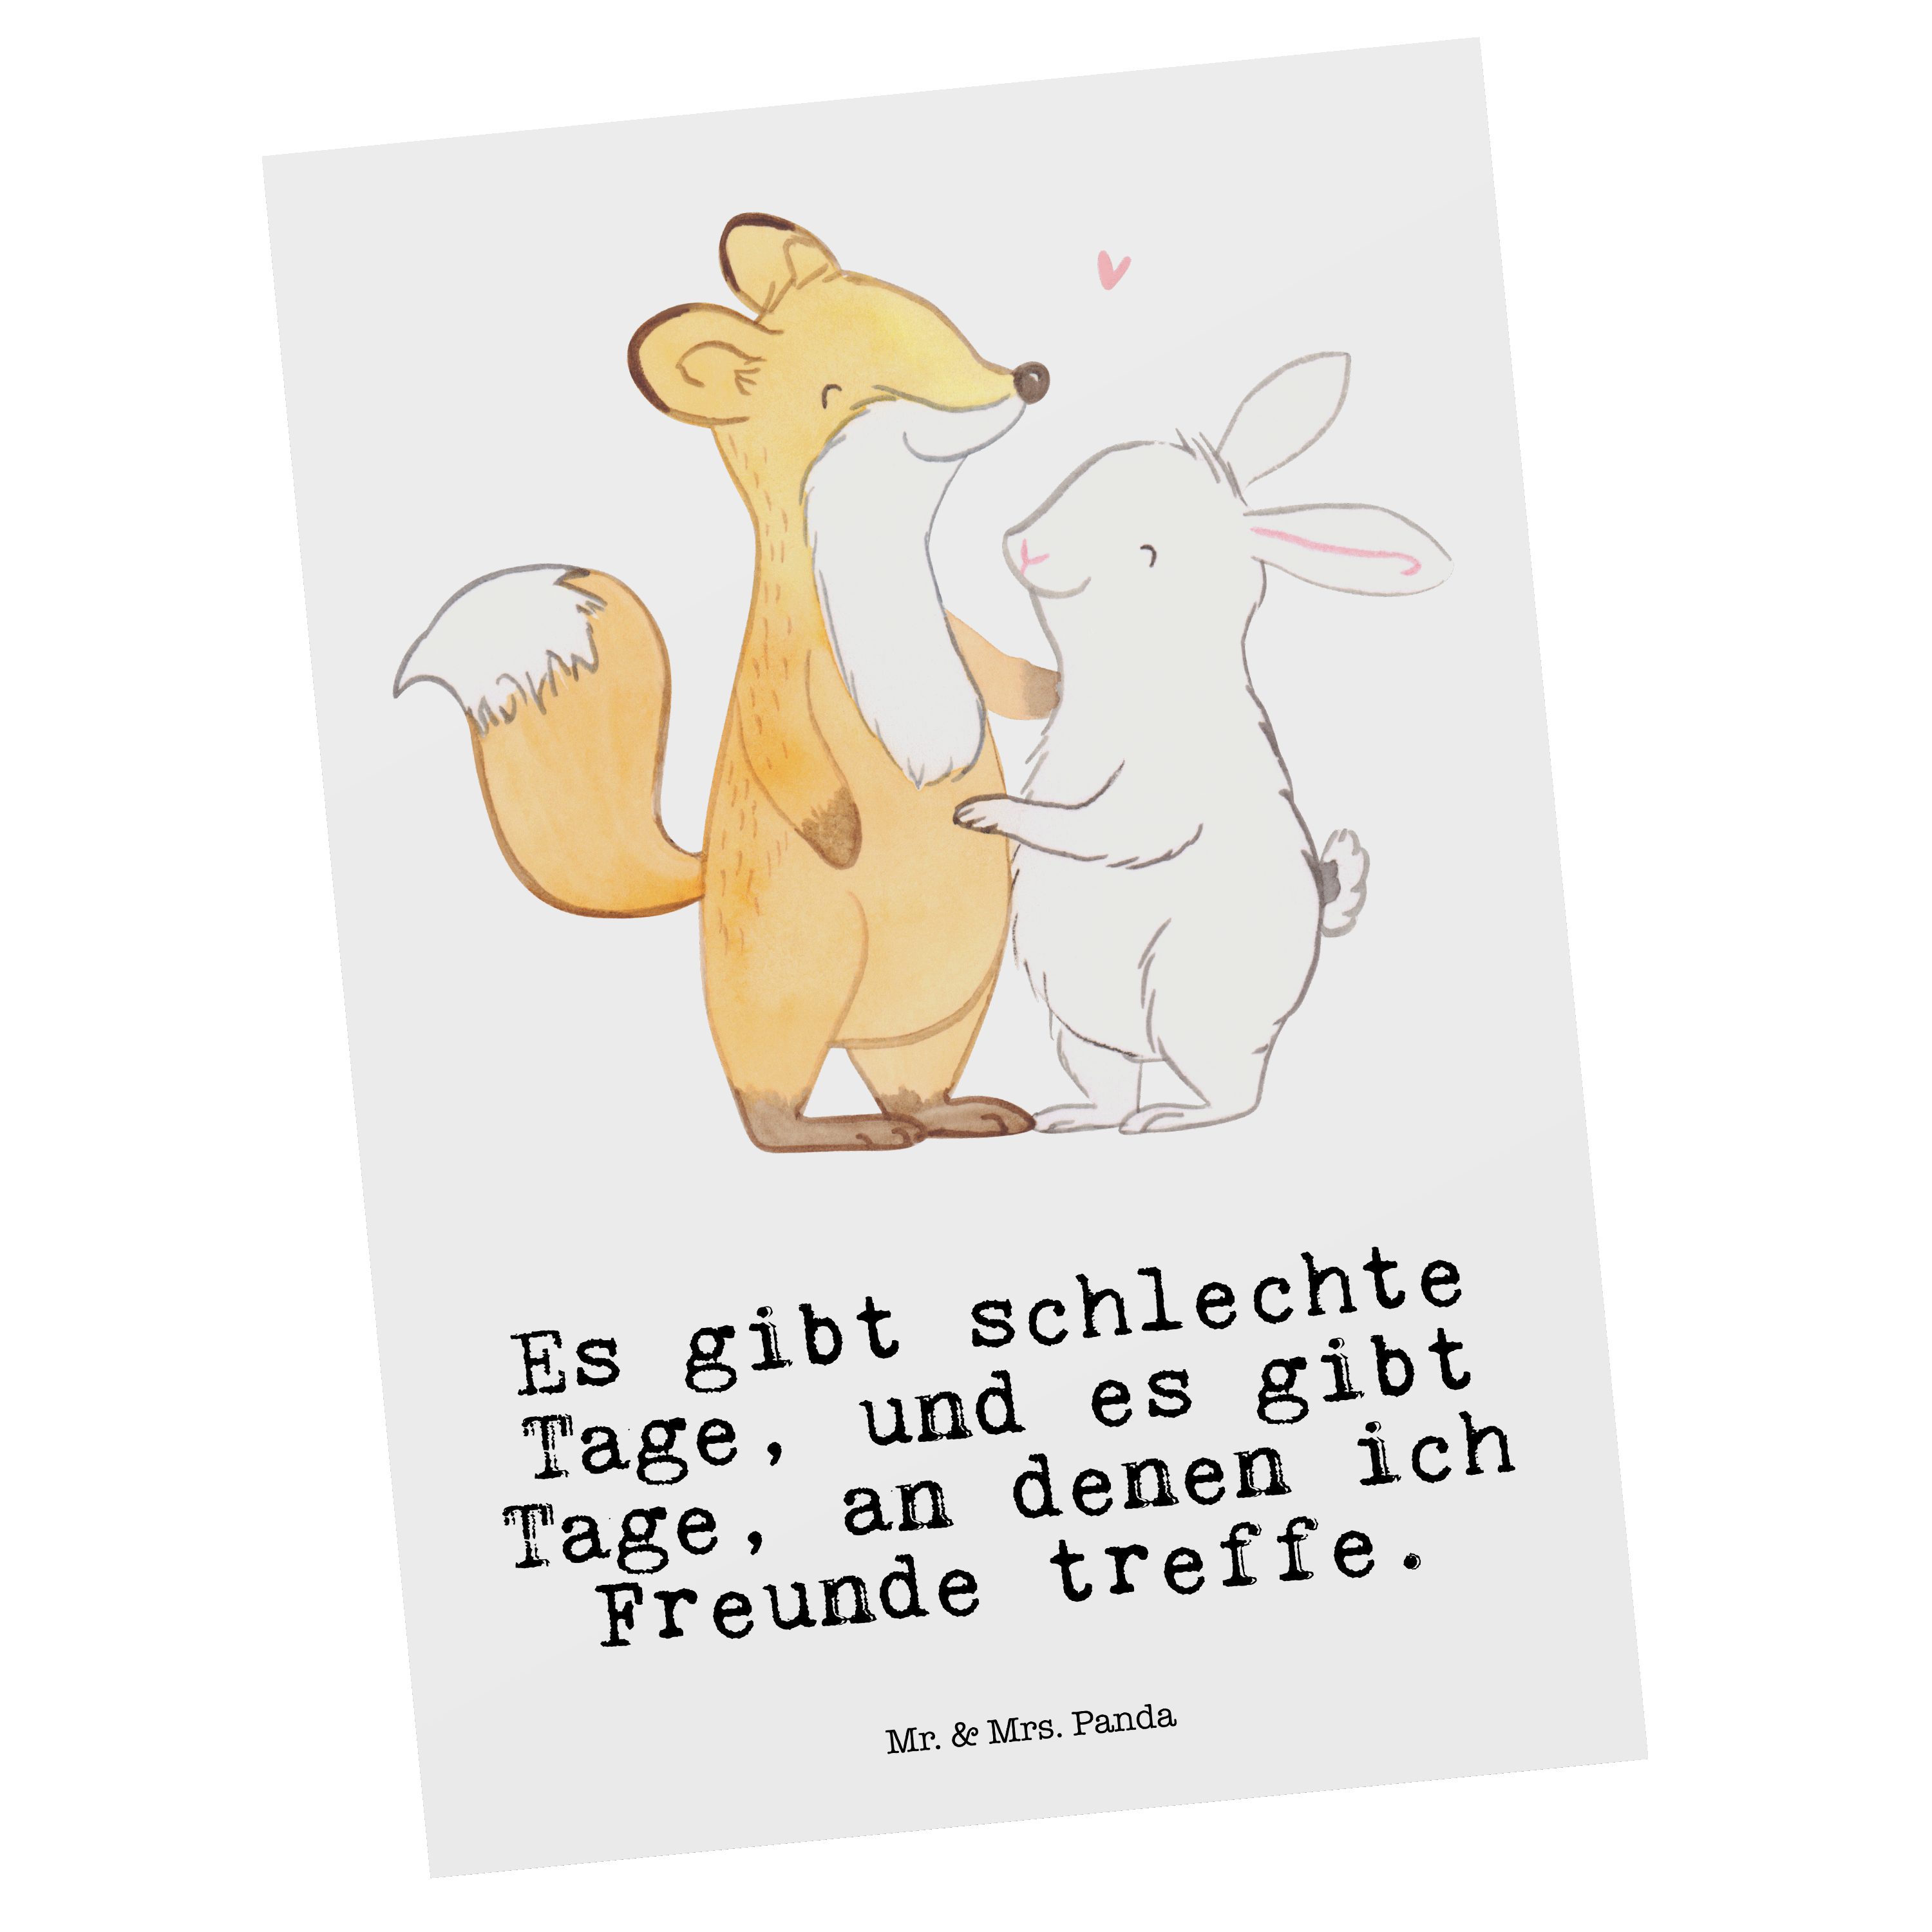 Mr. & Mrs. Panda Postkarte Fuchs Hase Freunde treffen Tage - Weiß - Geschenk, Sportler, Ansichts